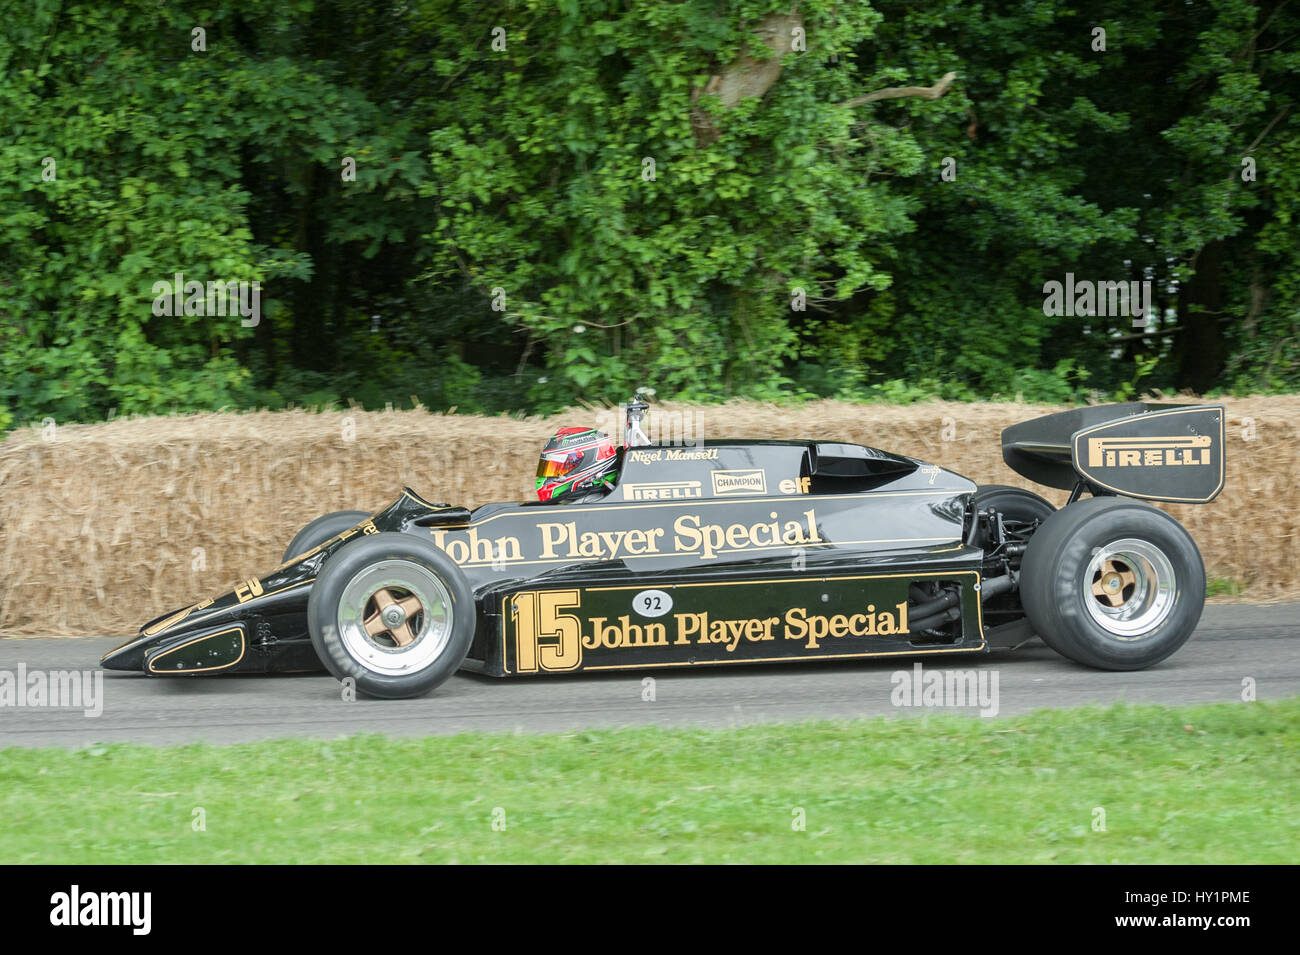 Goodwood, UK - 1 juillet 2012 : Emanuele Pirro conduisant le classic 1983 JPS Lotus F1 sur la colline de voiture de course course au Festival de la vitesse. Banque D'Images